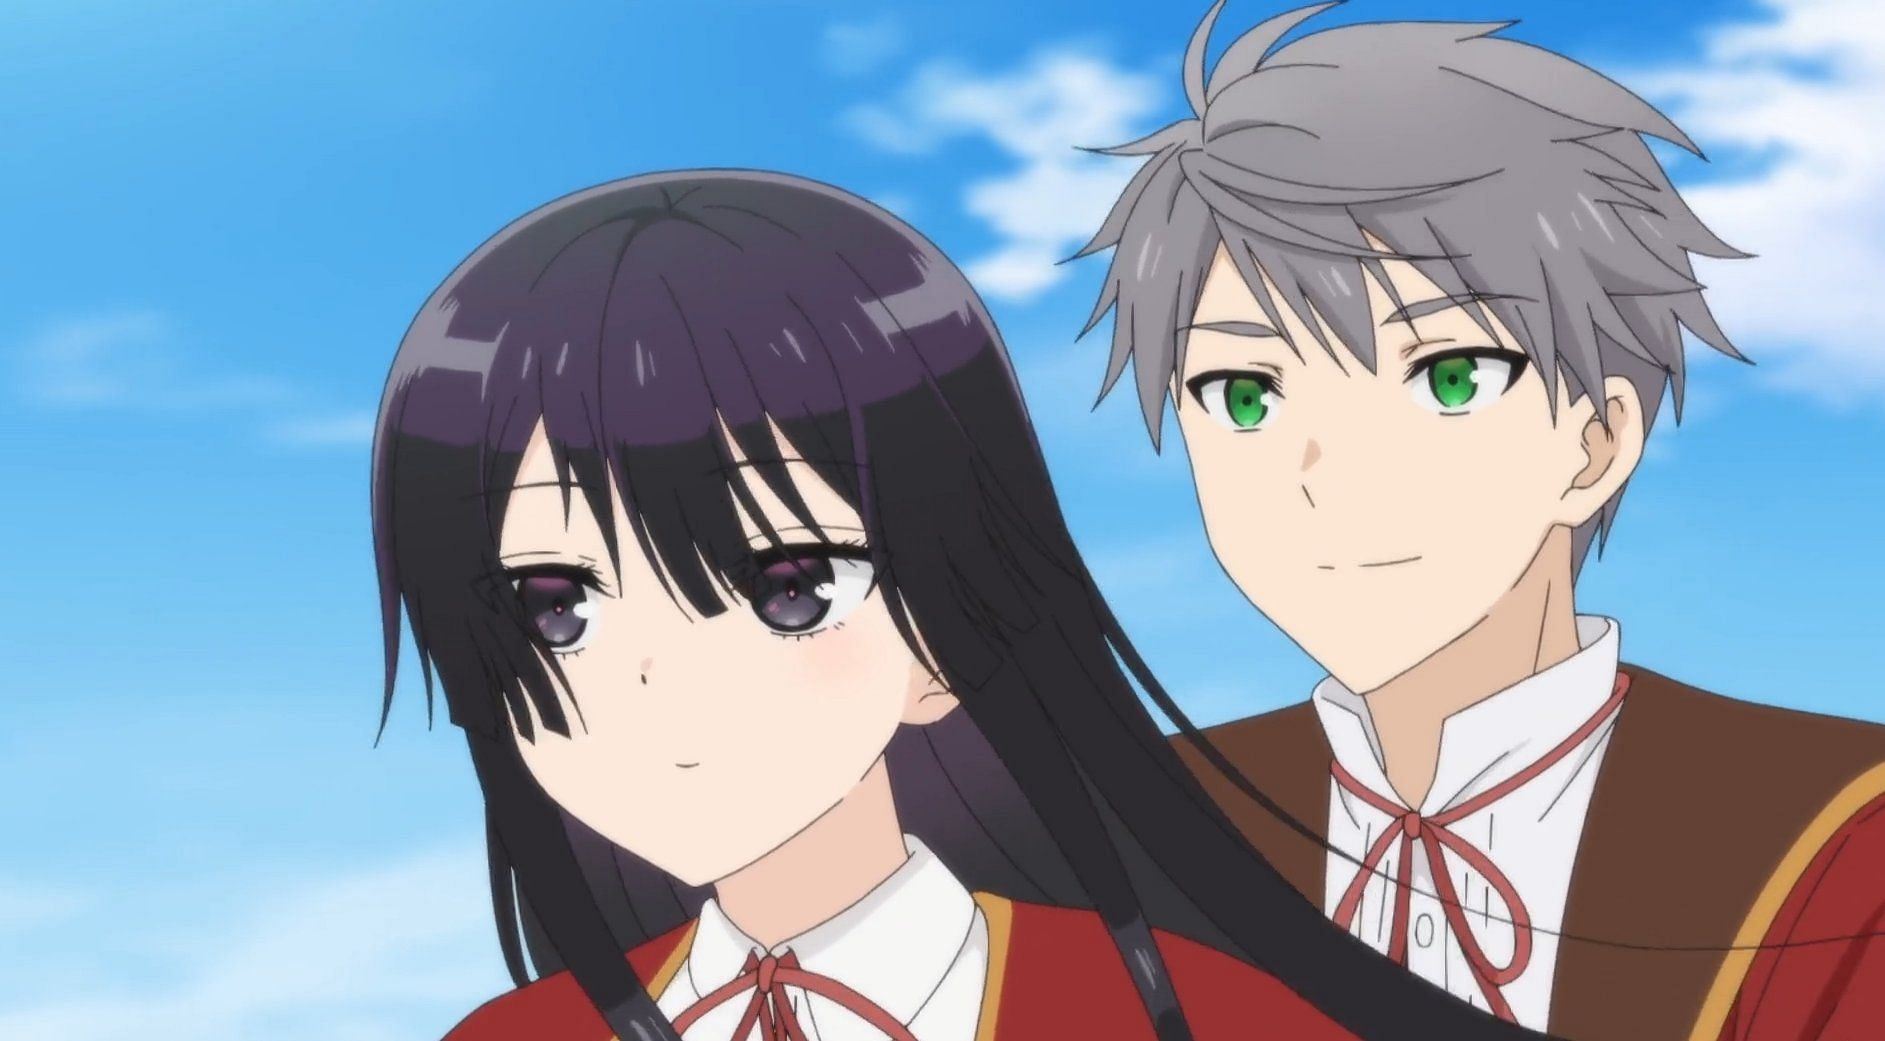 Yumiella and Patrick as seen in the anime (image via Studio Jumondo)